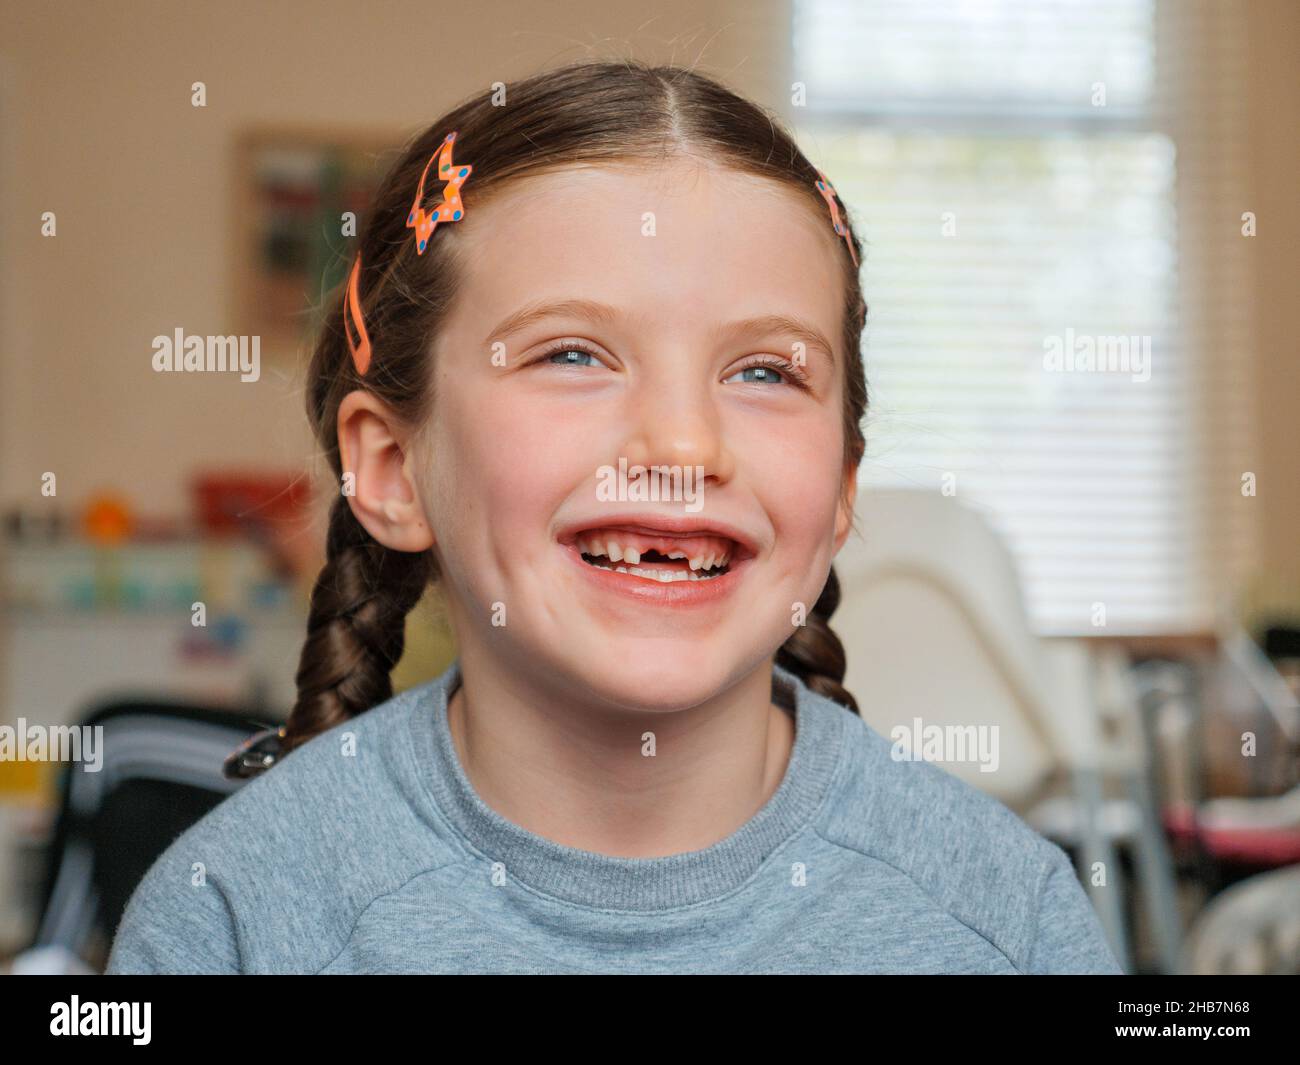 Portrait d'une jeune fille de sept ans souriante qui a perdu ses dents de bébé avant qui sont tombées Banque D'Images